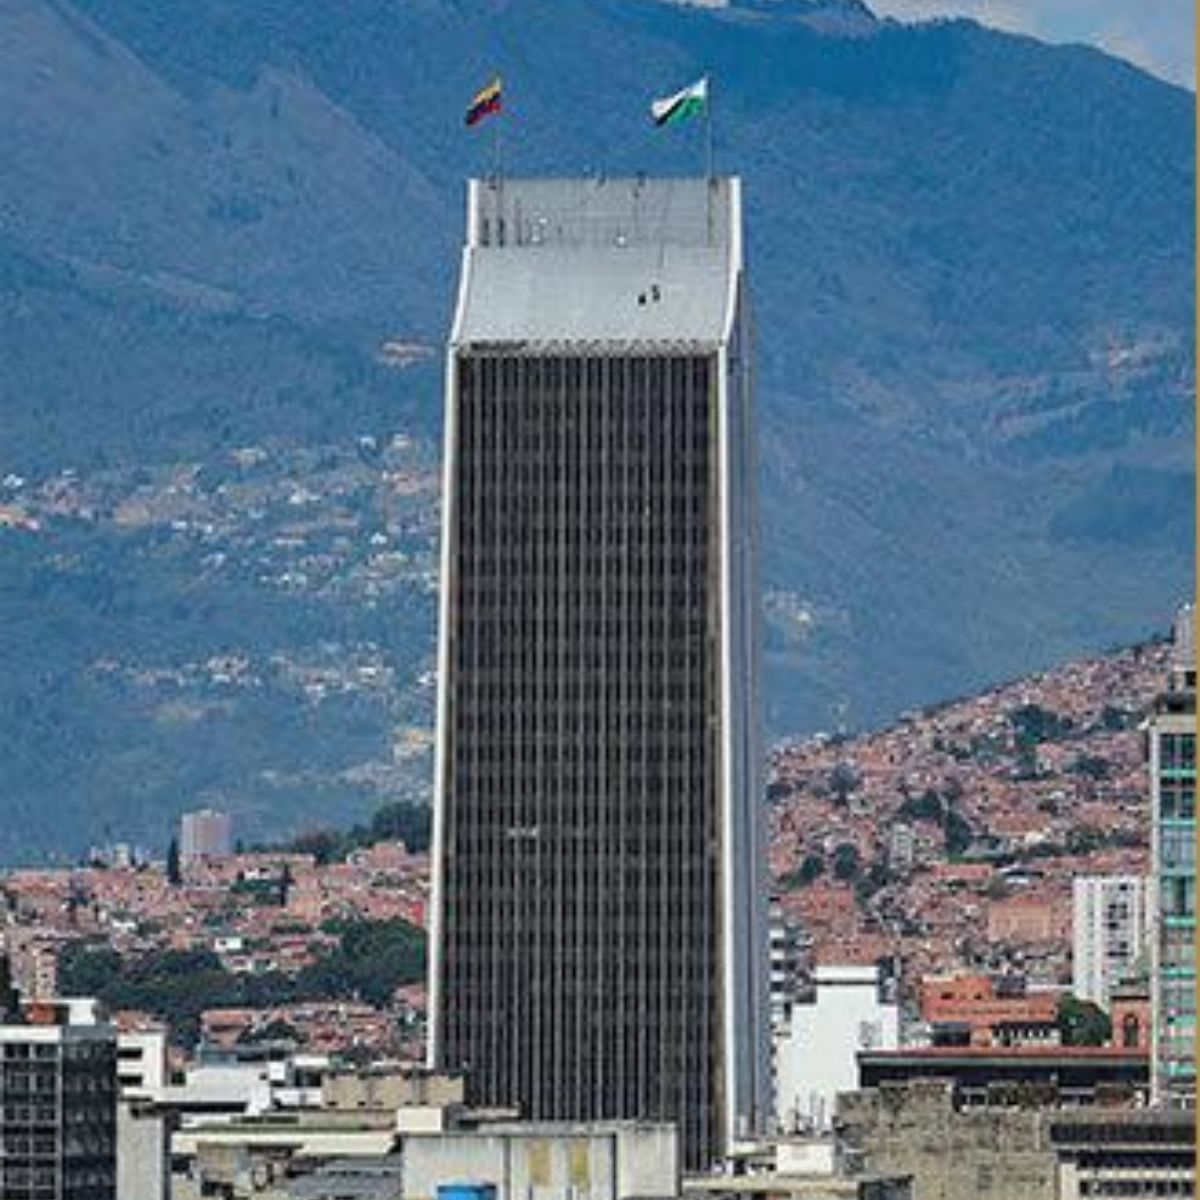 Edificio Coltejer - La historia del edificio Coltejer, el más alto de Latinoamérica en los años 70 y la insignia de Medellín